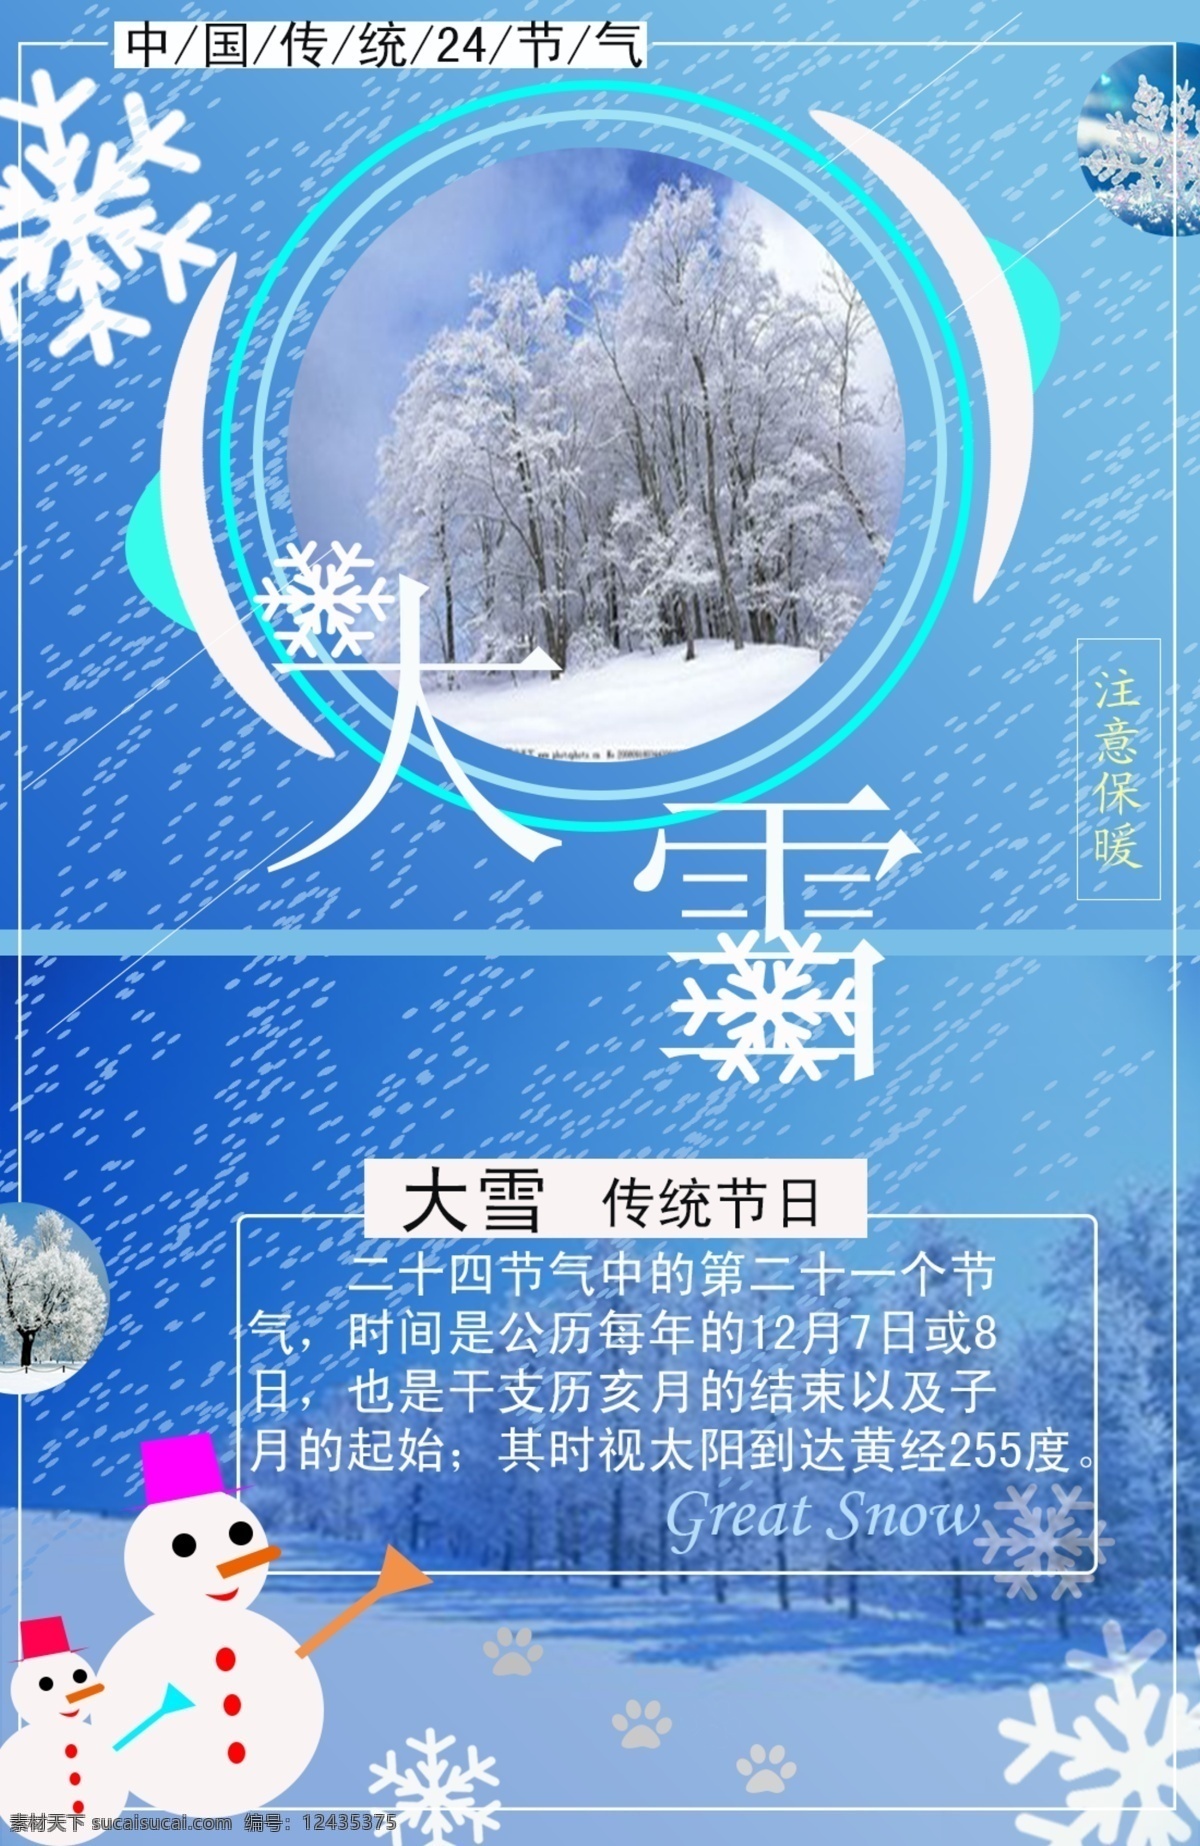 大雪 节气 天寒地冻 节日元素 背景 海报 平面设计